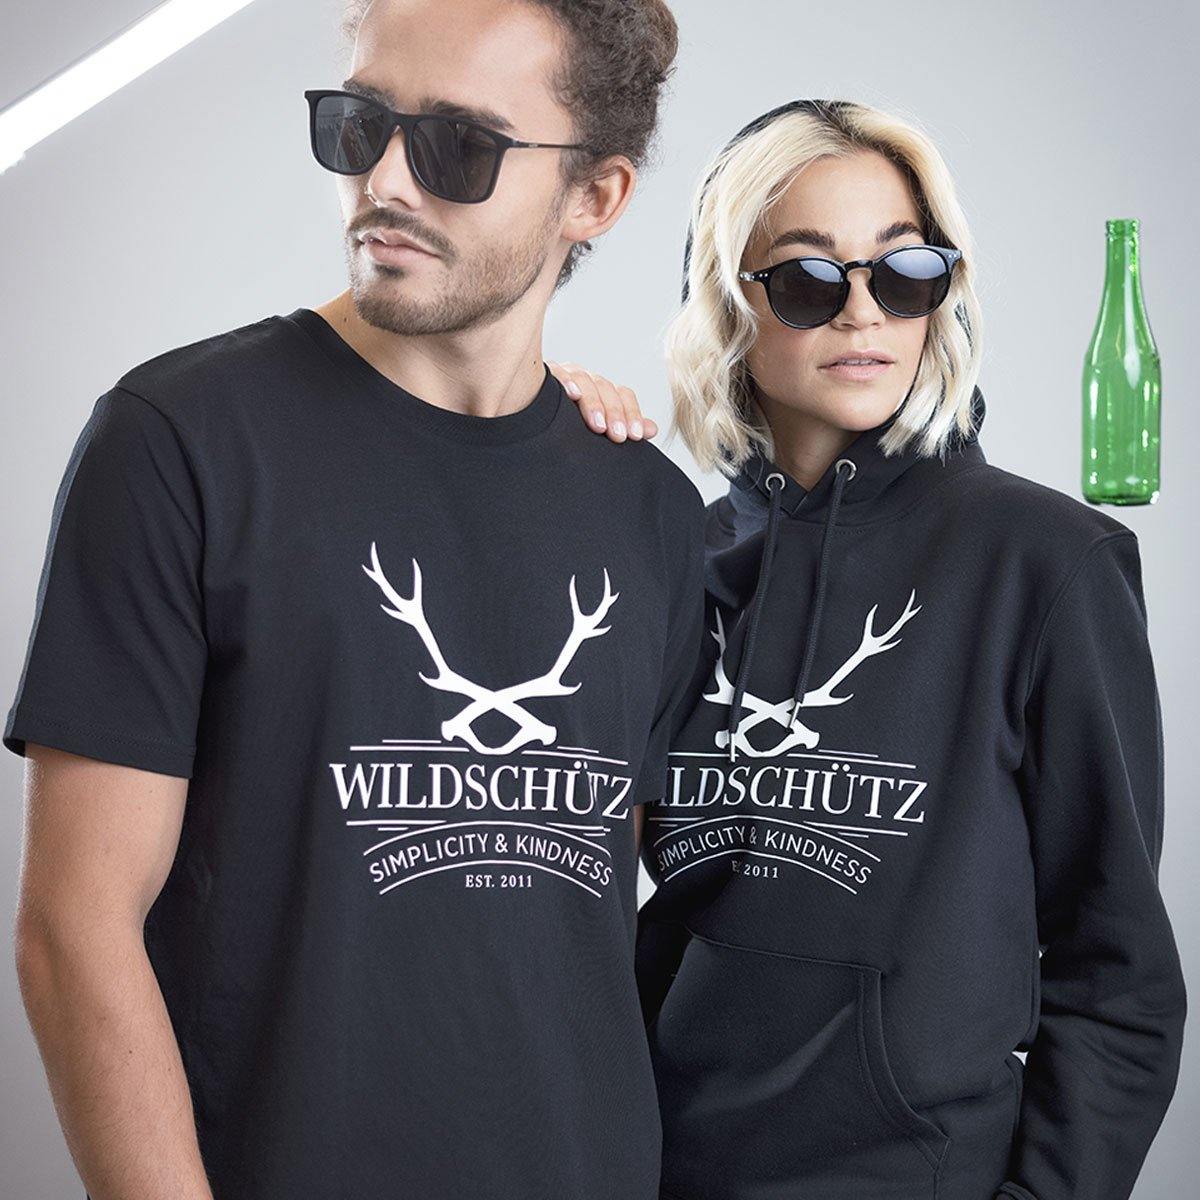 T-Shirt "Wildschütz" - wise enough